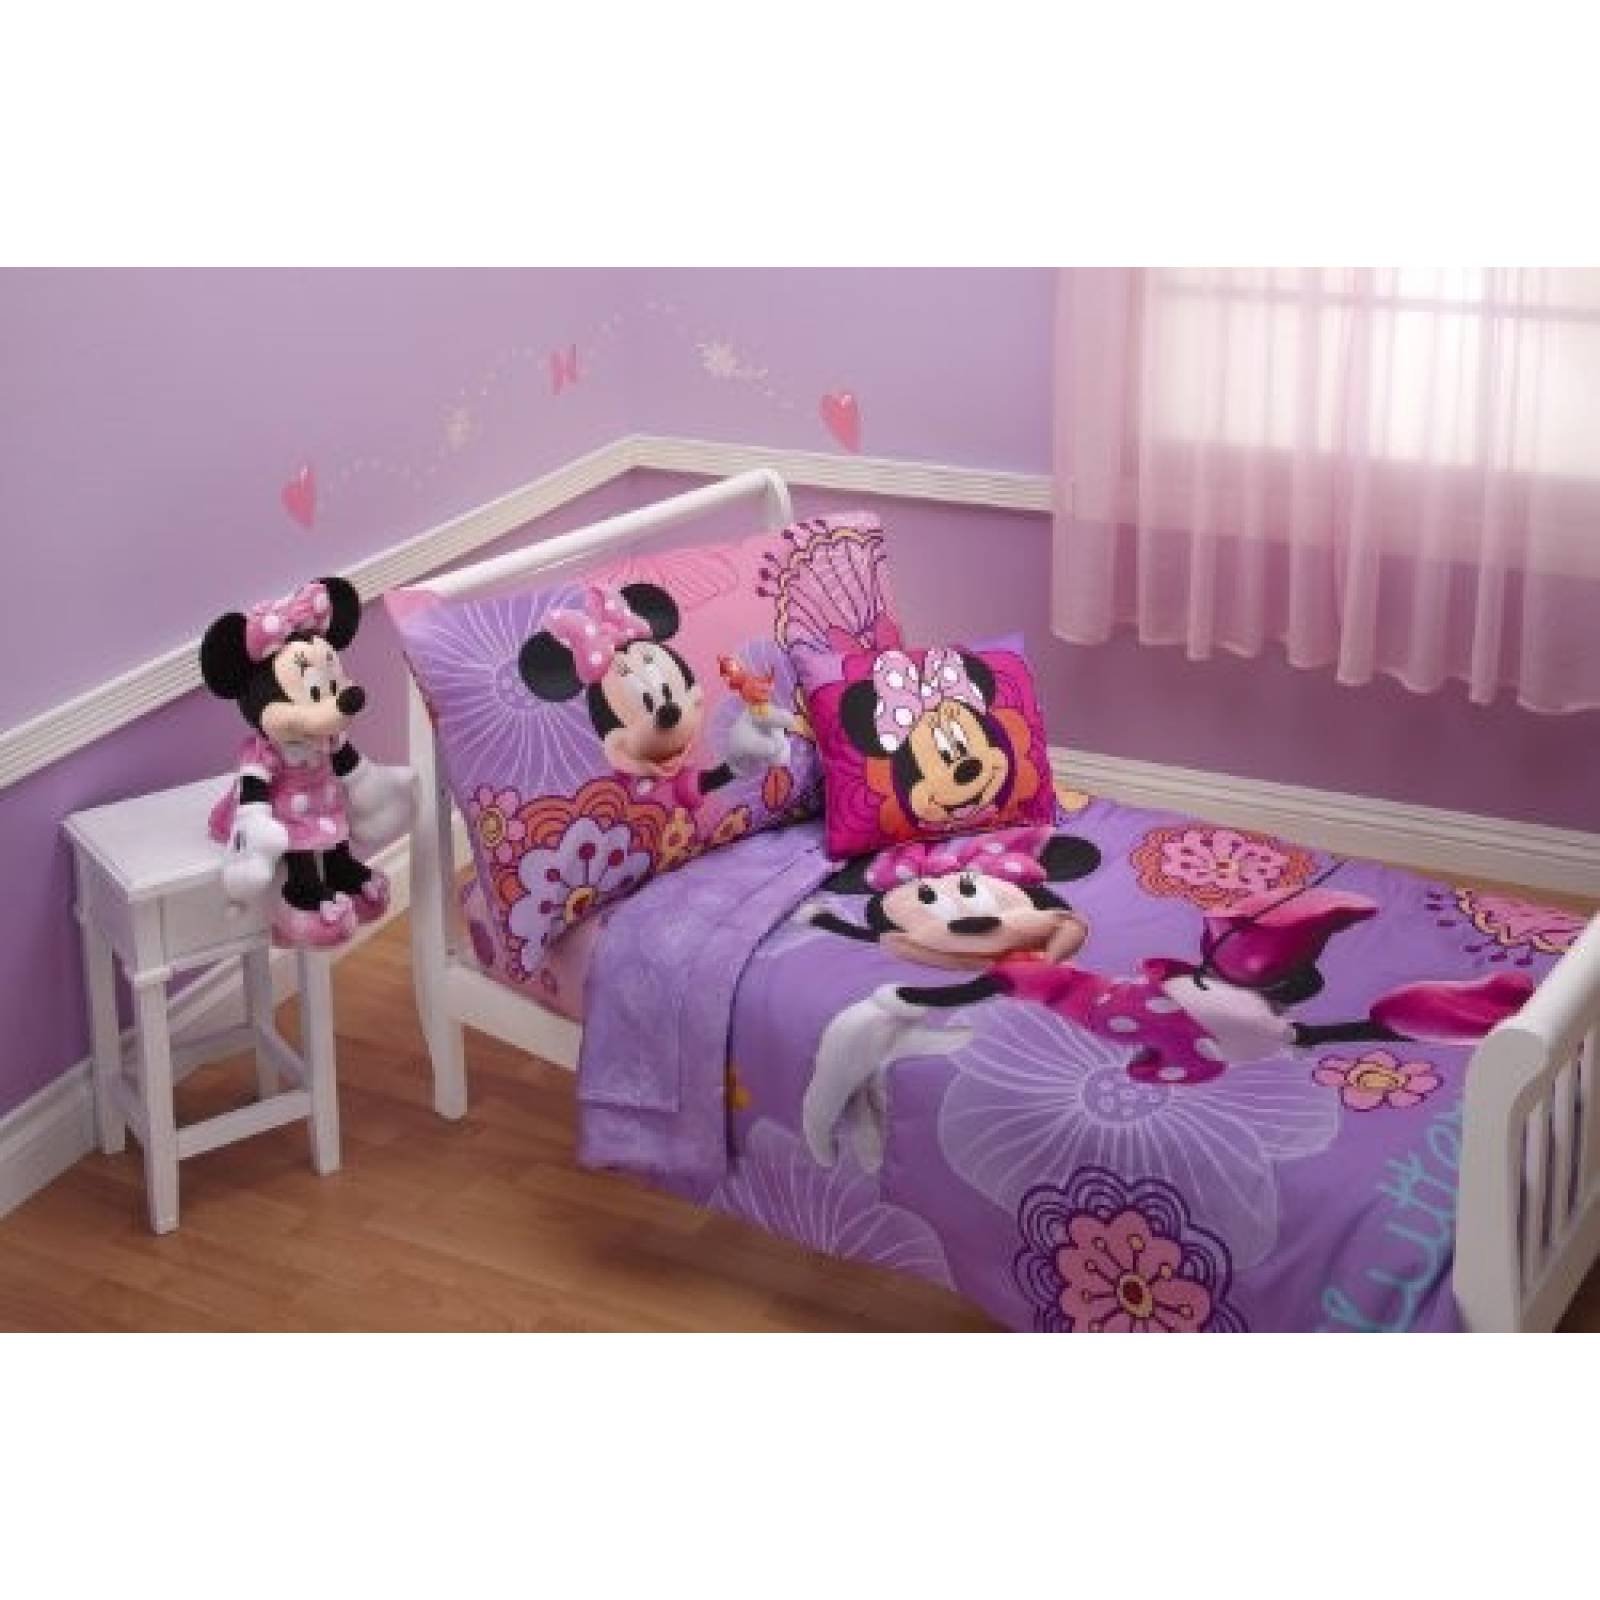 Juego de cama Disney para niños de 4 piezas -Minnie Mouse